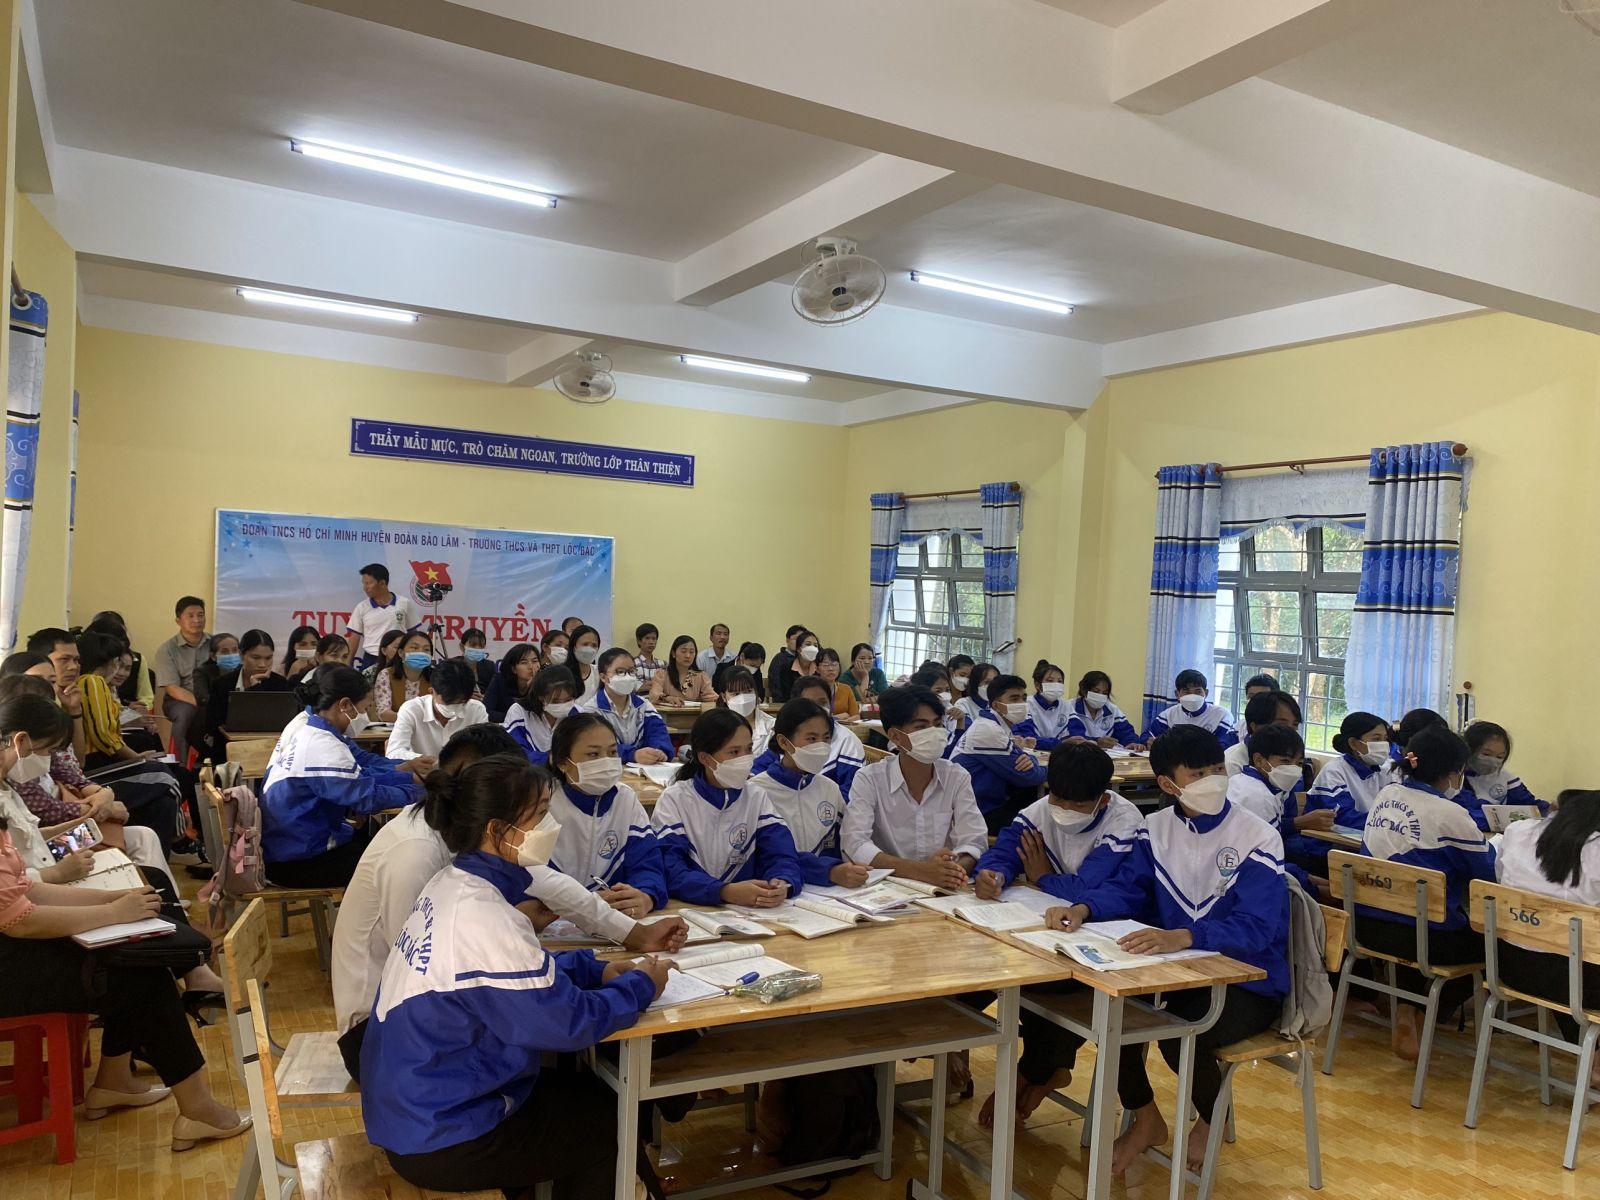 Đánh Giá Trường THPT Lộc Bắc Bảo Lâm Tỉnh Lâm Đồng Có Tốt Không